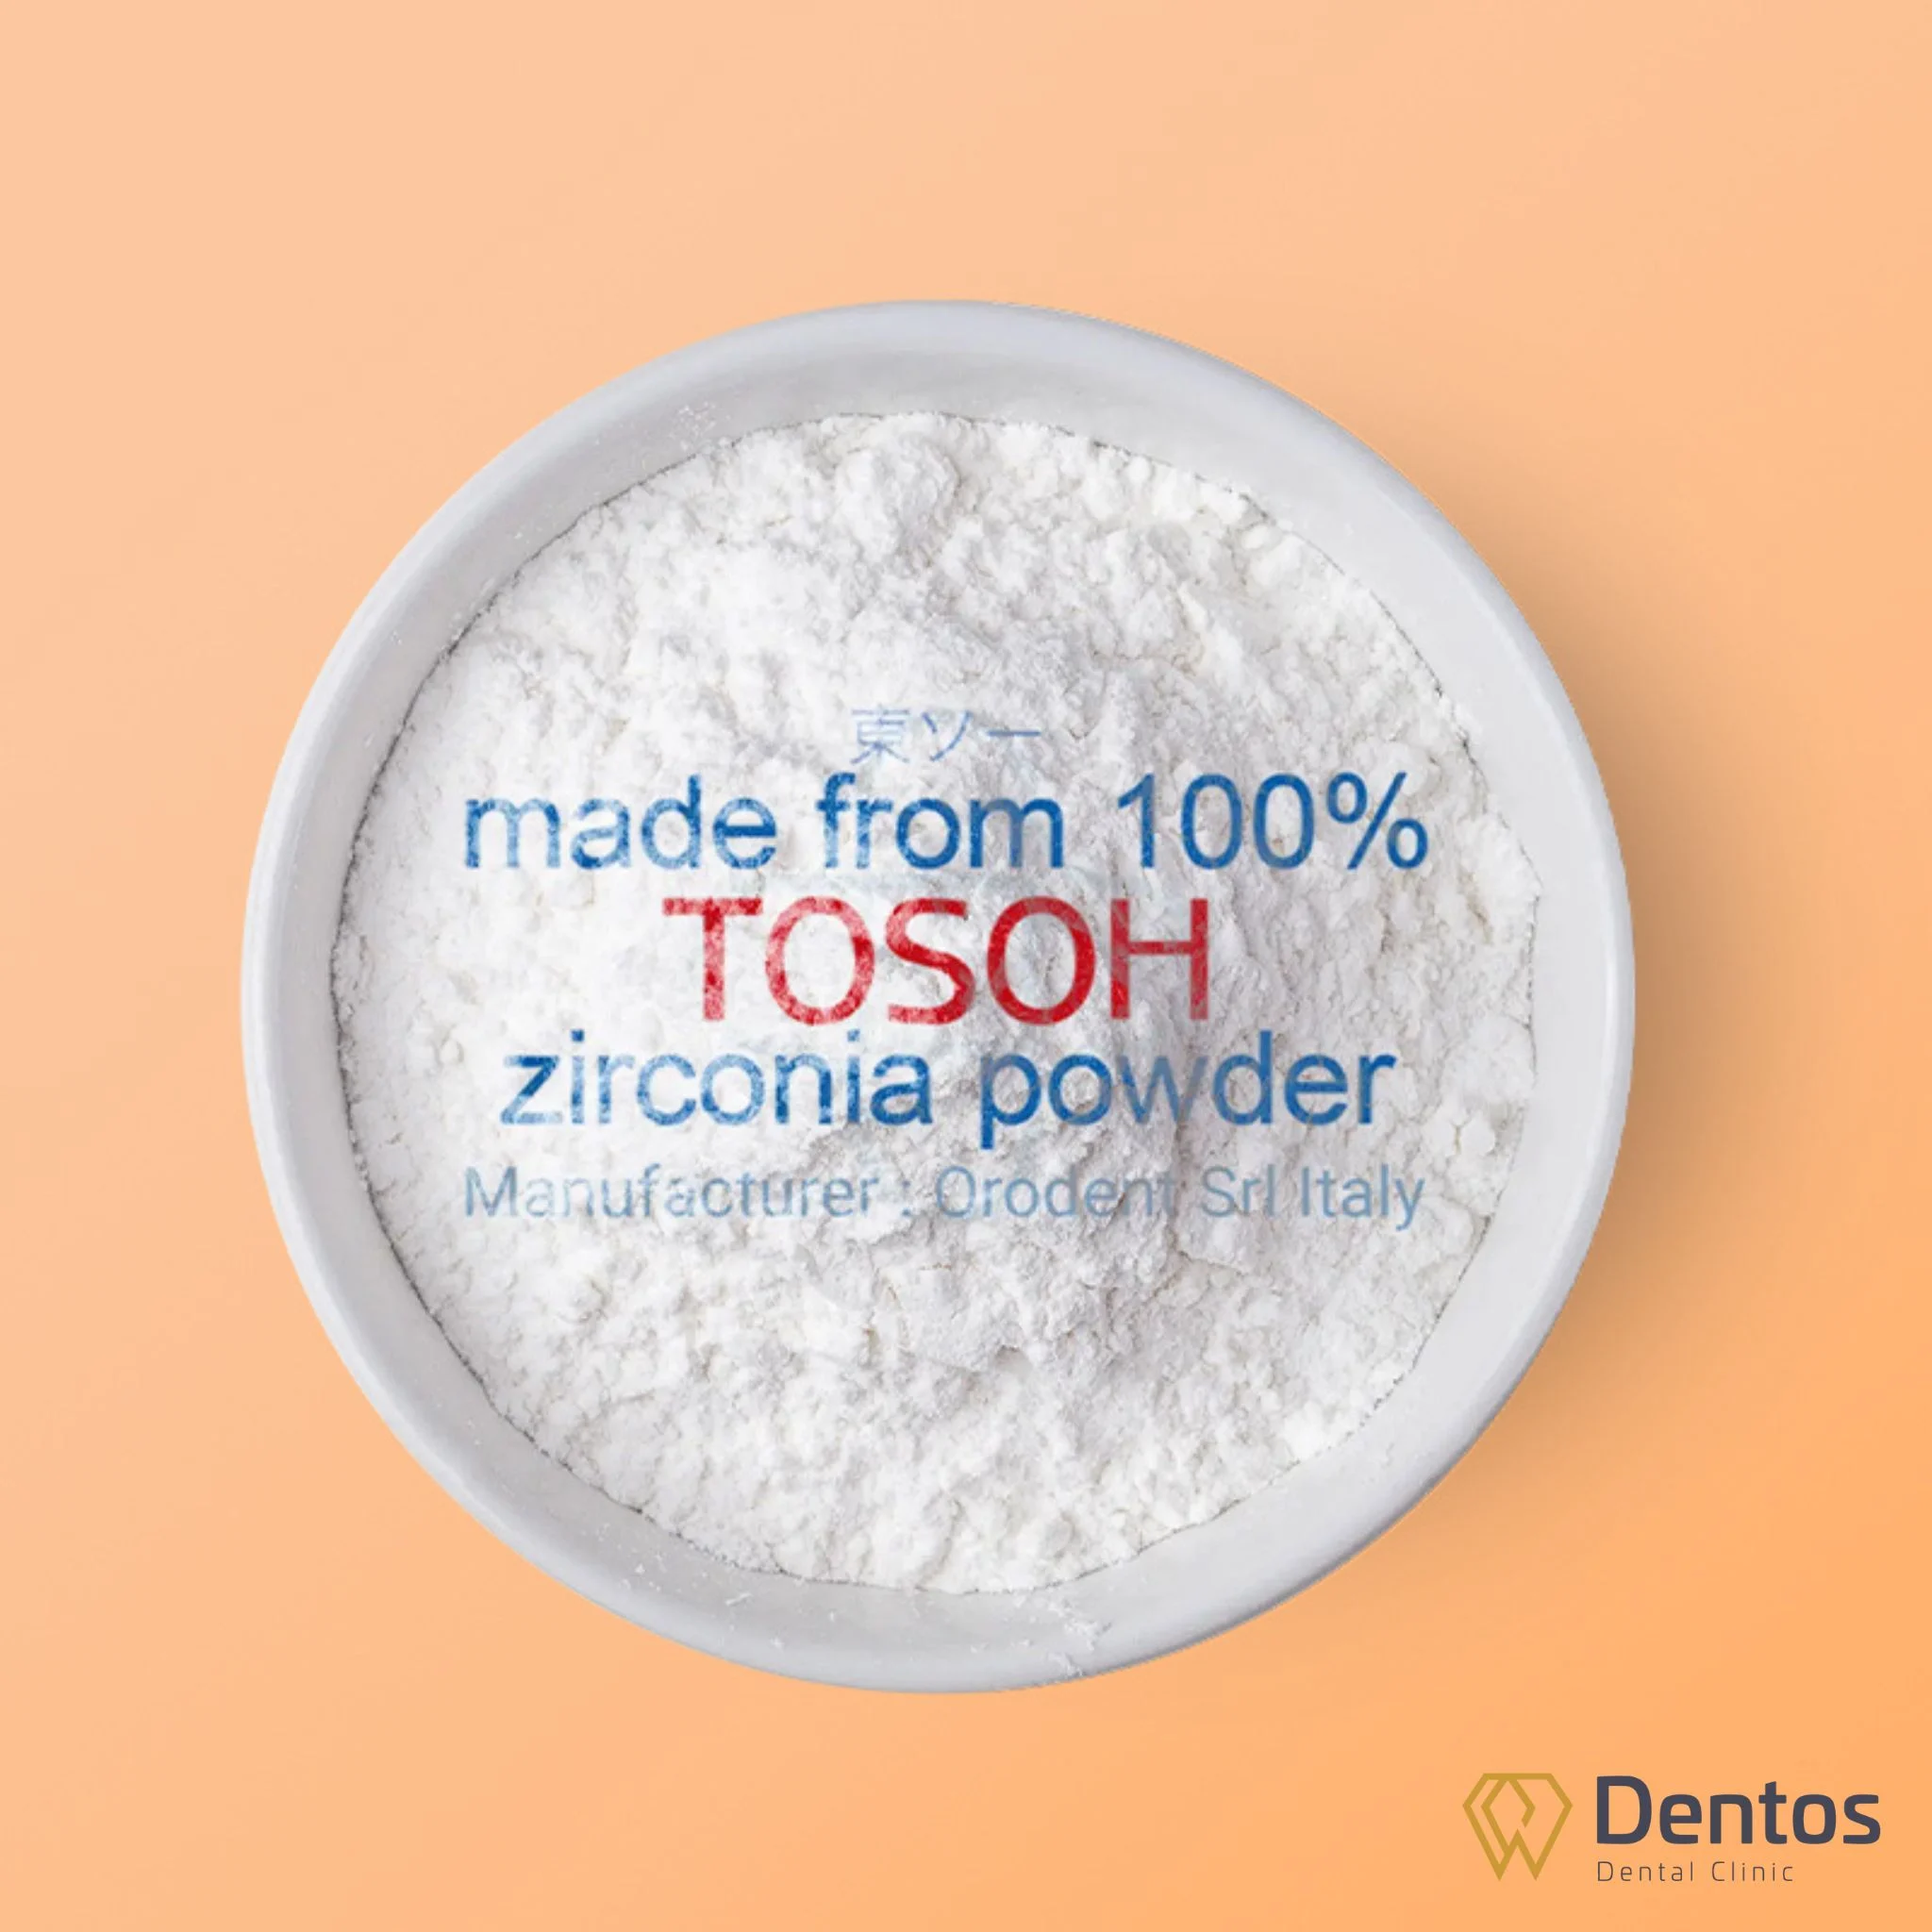 Răng sứ Orodent được chế tác 100% từ bột sứ Zirconia cao cấp của tập đoàn Tosoh Nhật Bản